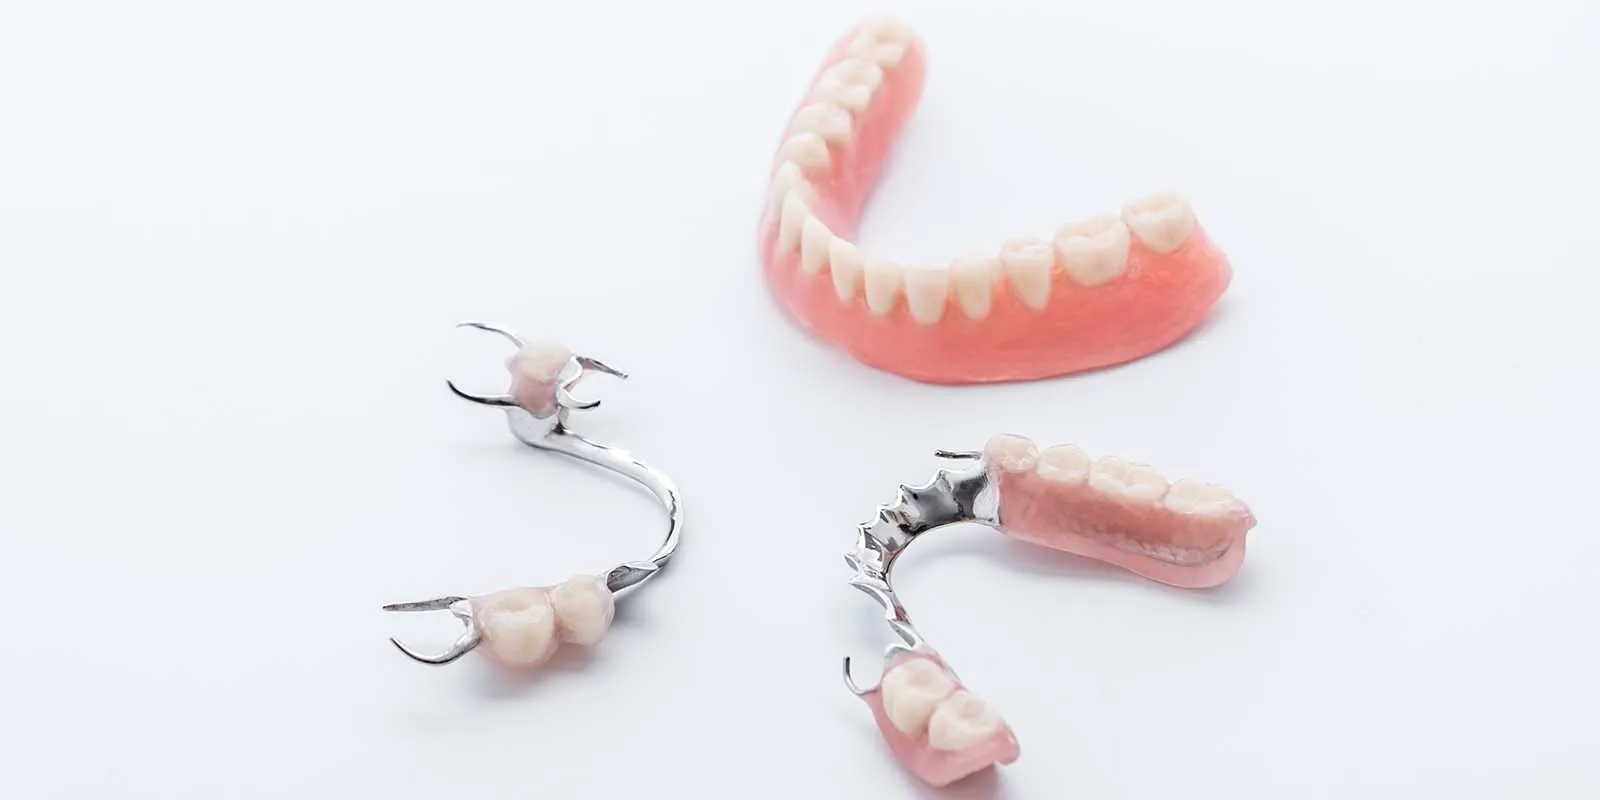 インプラントオーバーデンチャーと入れ歯の比較